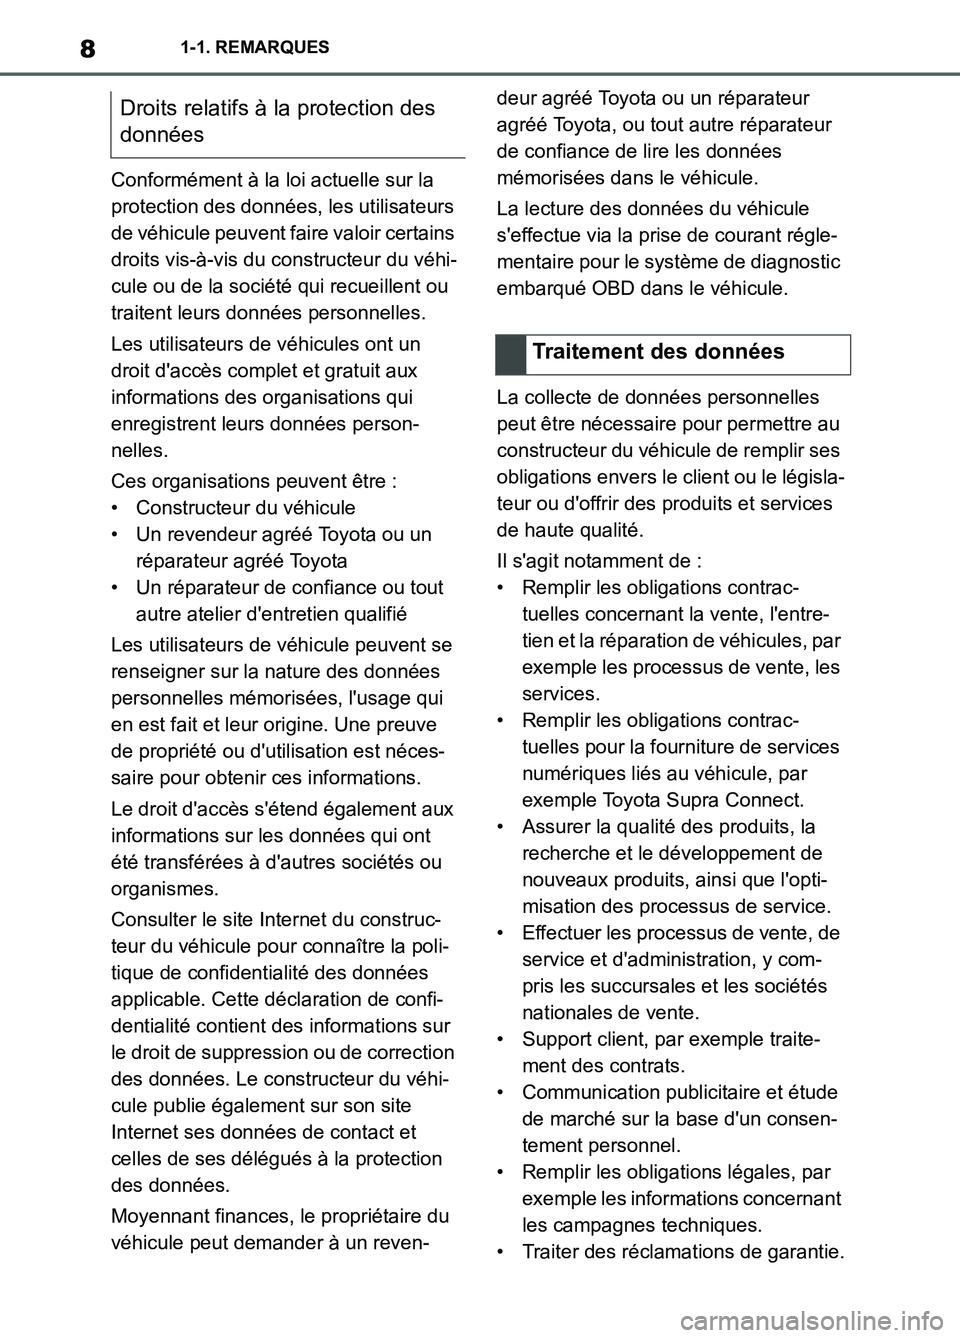 TOYOTA SUPRA 2022  Notices Demploi (in French) 81-1. REMARQUES
Conformément à la loi actuelle sur la 
protection des données, les utilisateurs 
de véhicule peuvent faire valoir certains 
droits vis-à-vis du constructeur du véhi-
cule ou de l